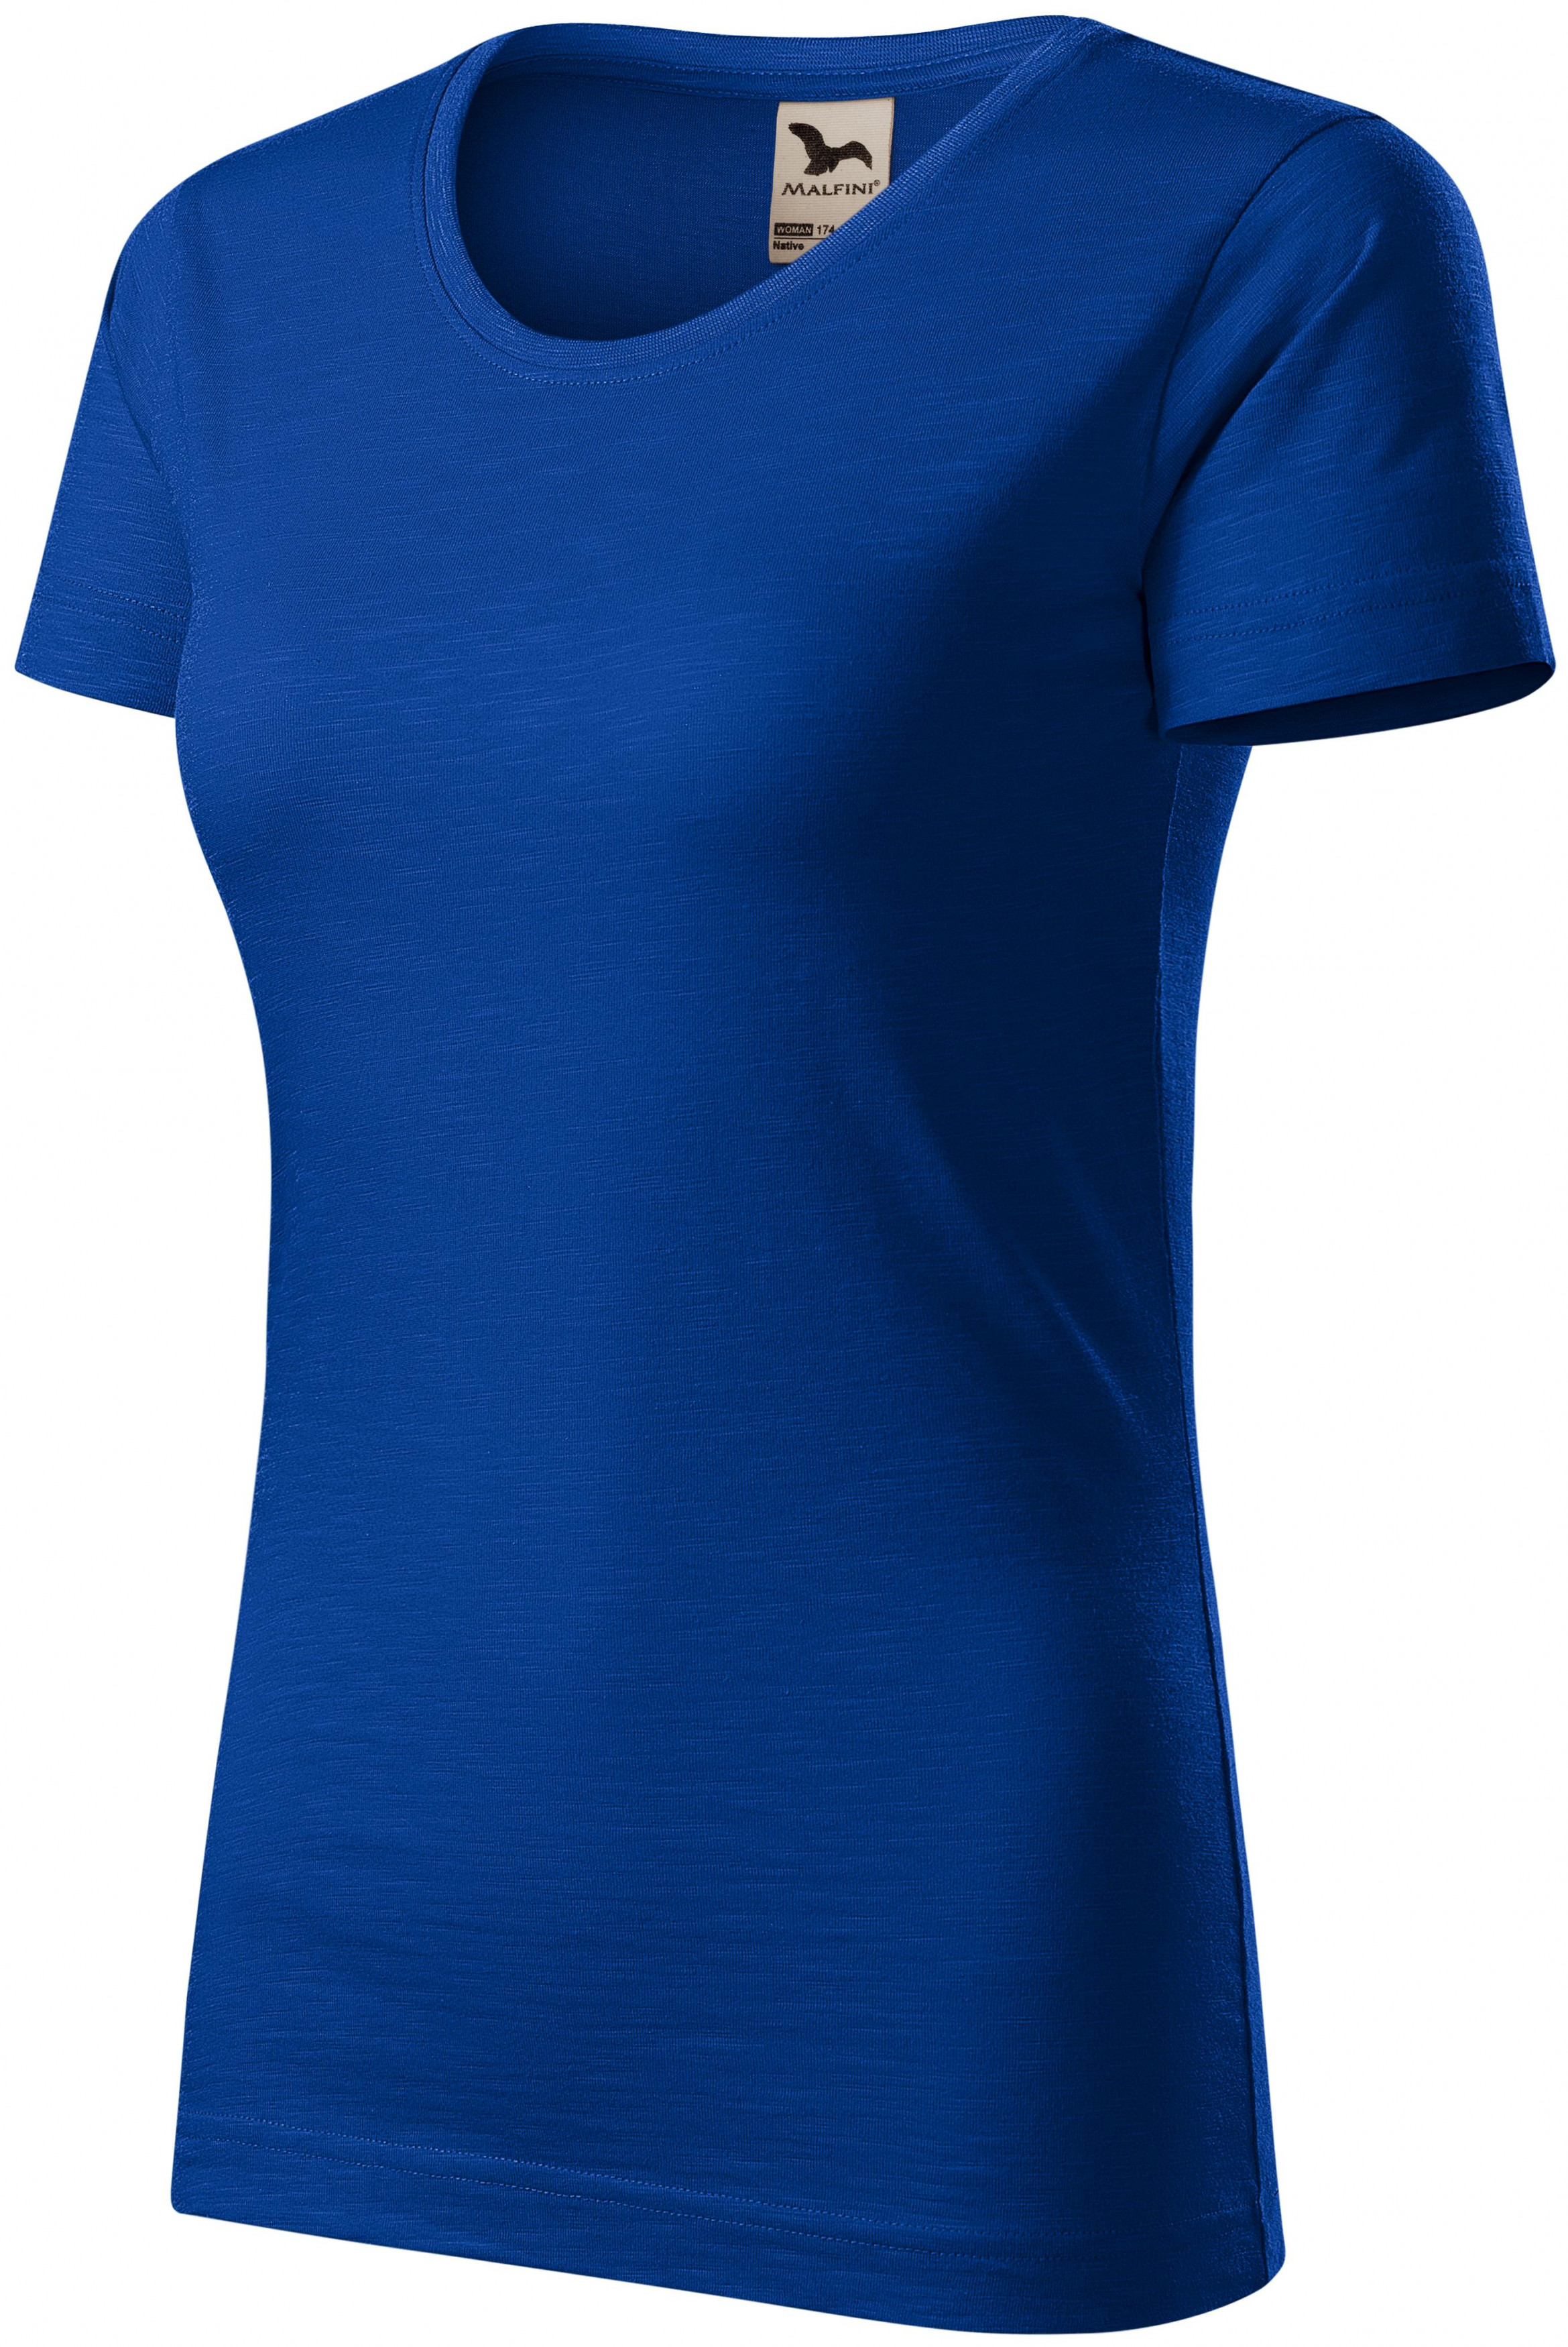 Dámske tričko, štruktúrovaná organická bavlna, kráľovská modrá, L